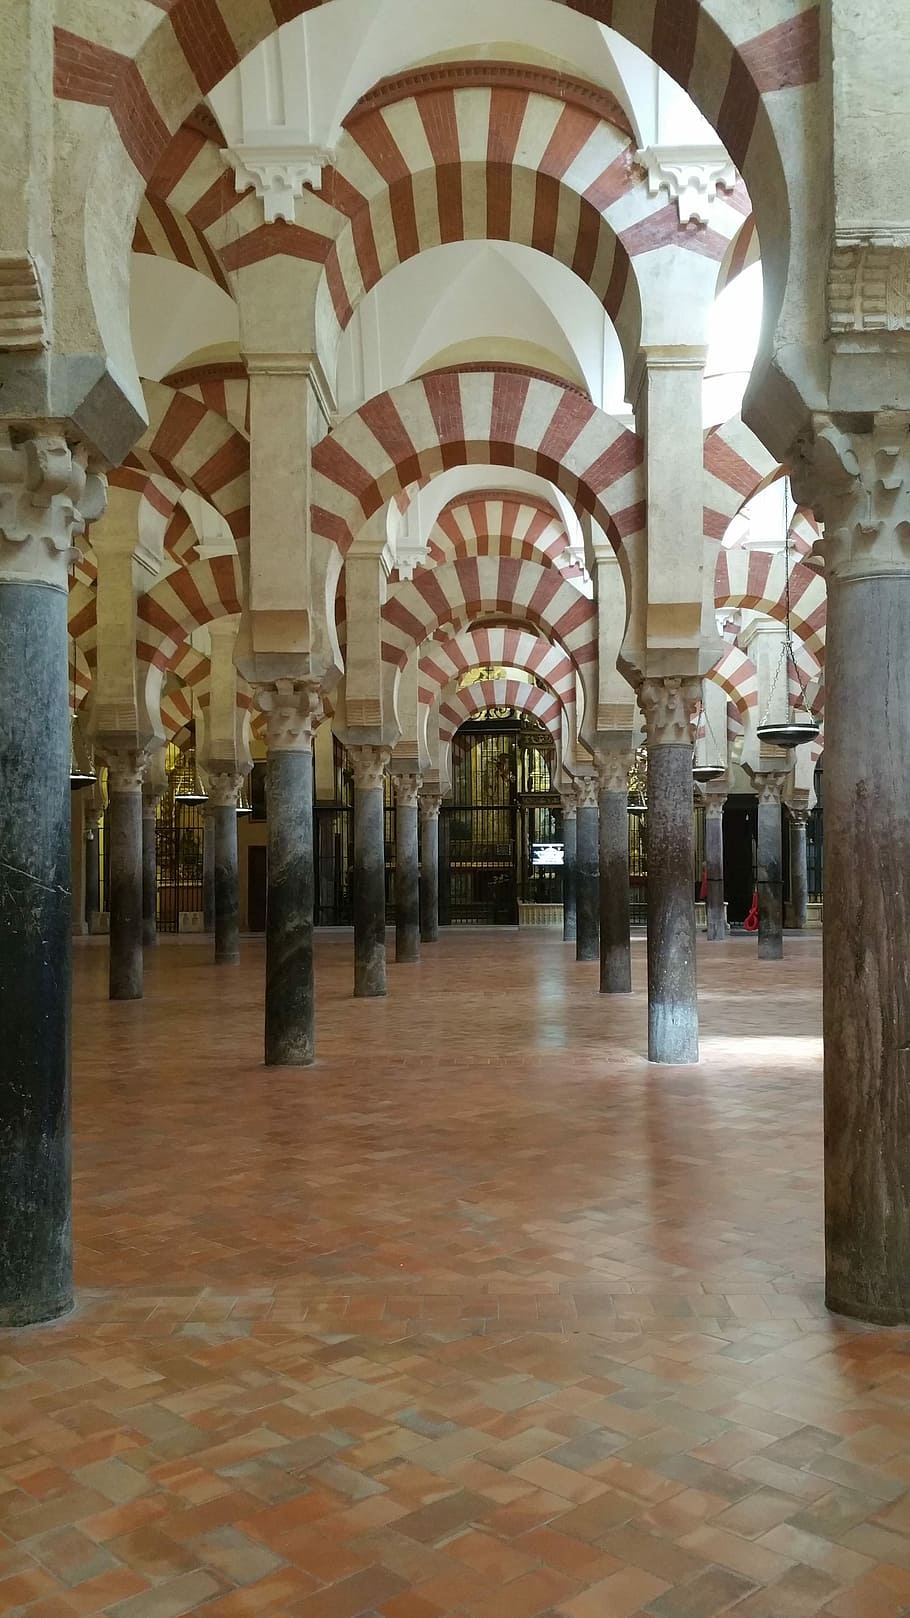 Mesquita – Catedral de Córdoba, mesquita-catedral de córdoba, grande mesquita de córdoba, córdoba, mesquita, catedral, arcos, arquitetura, dentro de casa, coluna arquitetônica